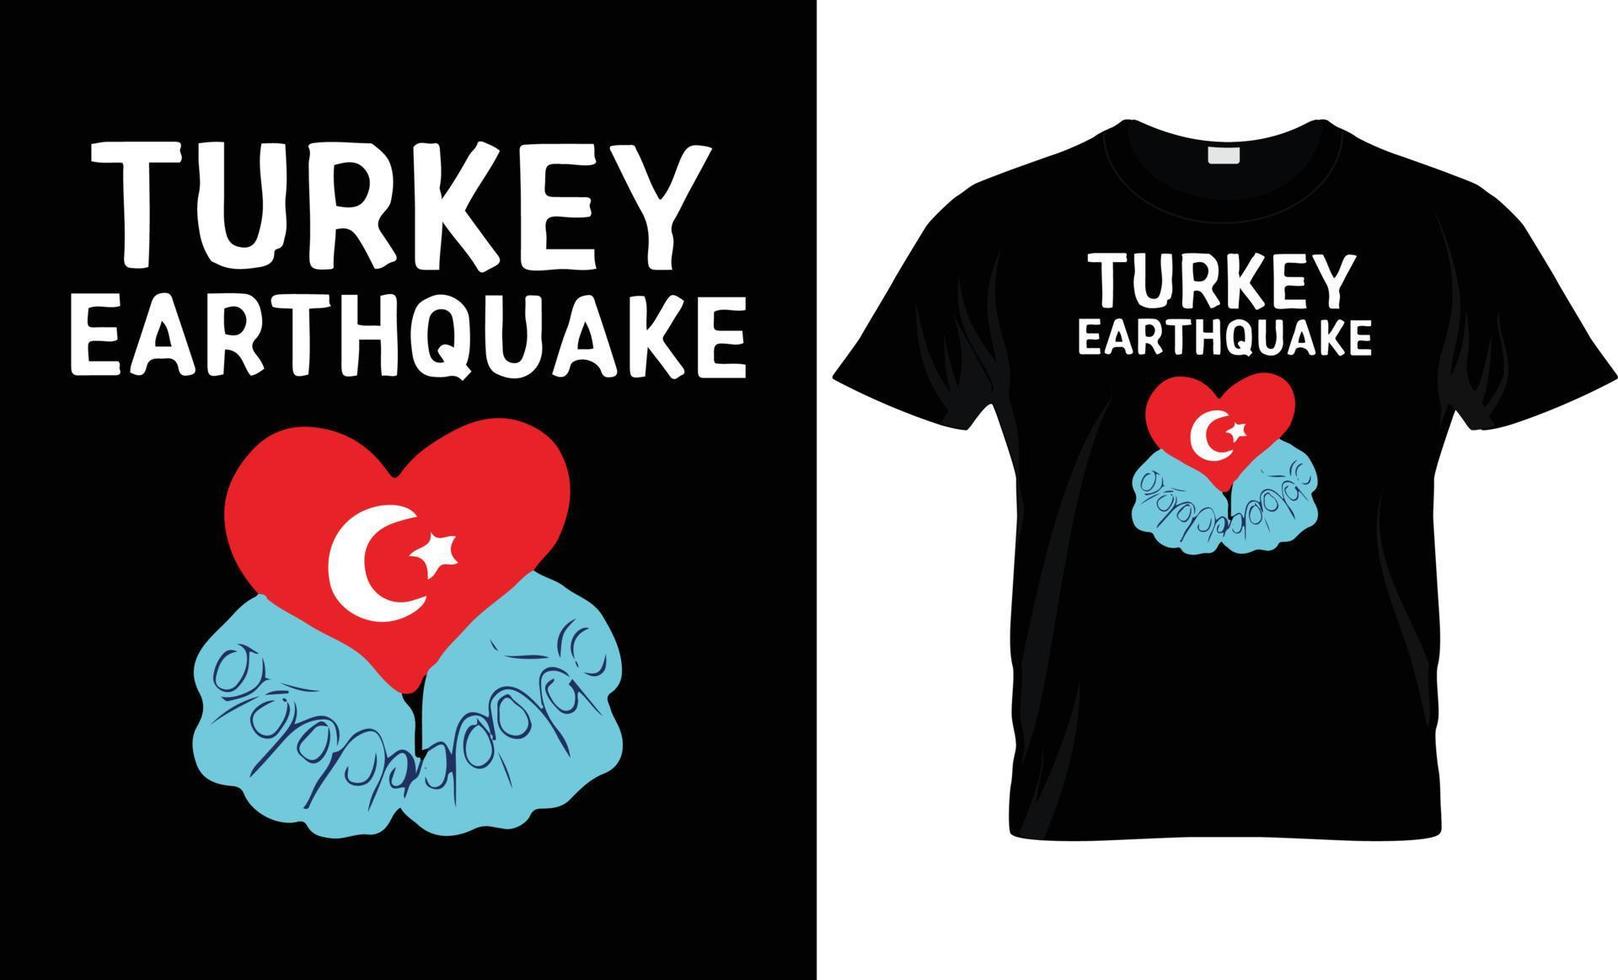 turkiye t - overhemd ontwerp vector